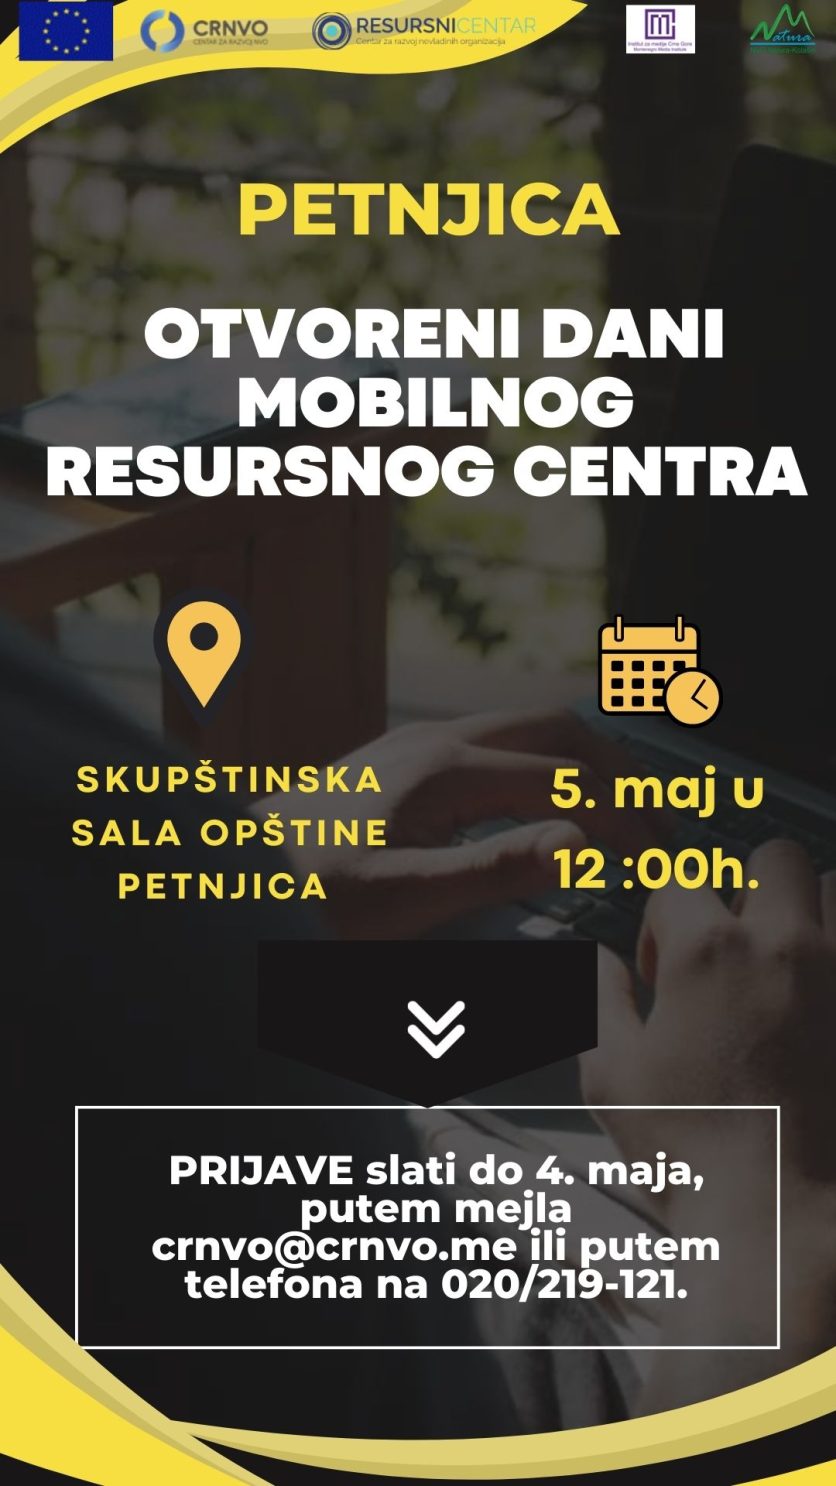 Otvoreni dani mobilnog resursnog centra u Petnjici